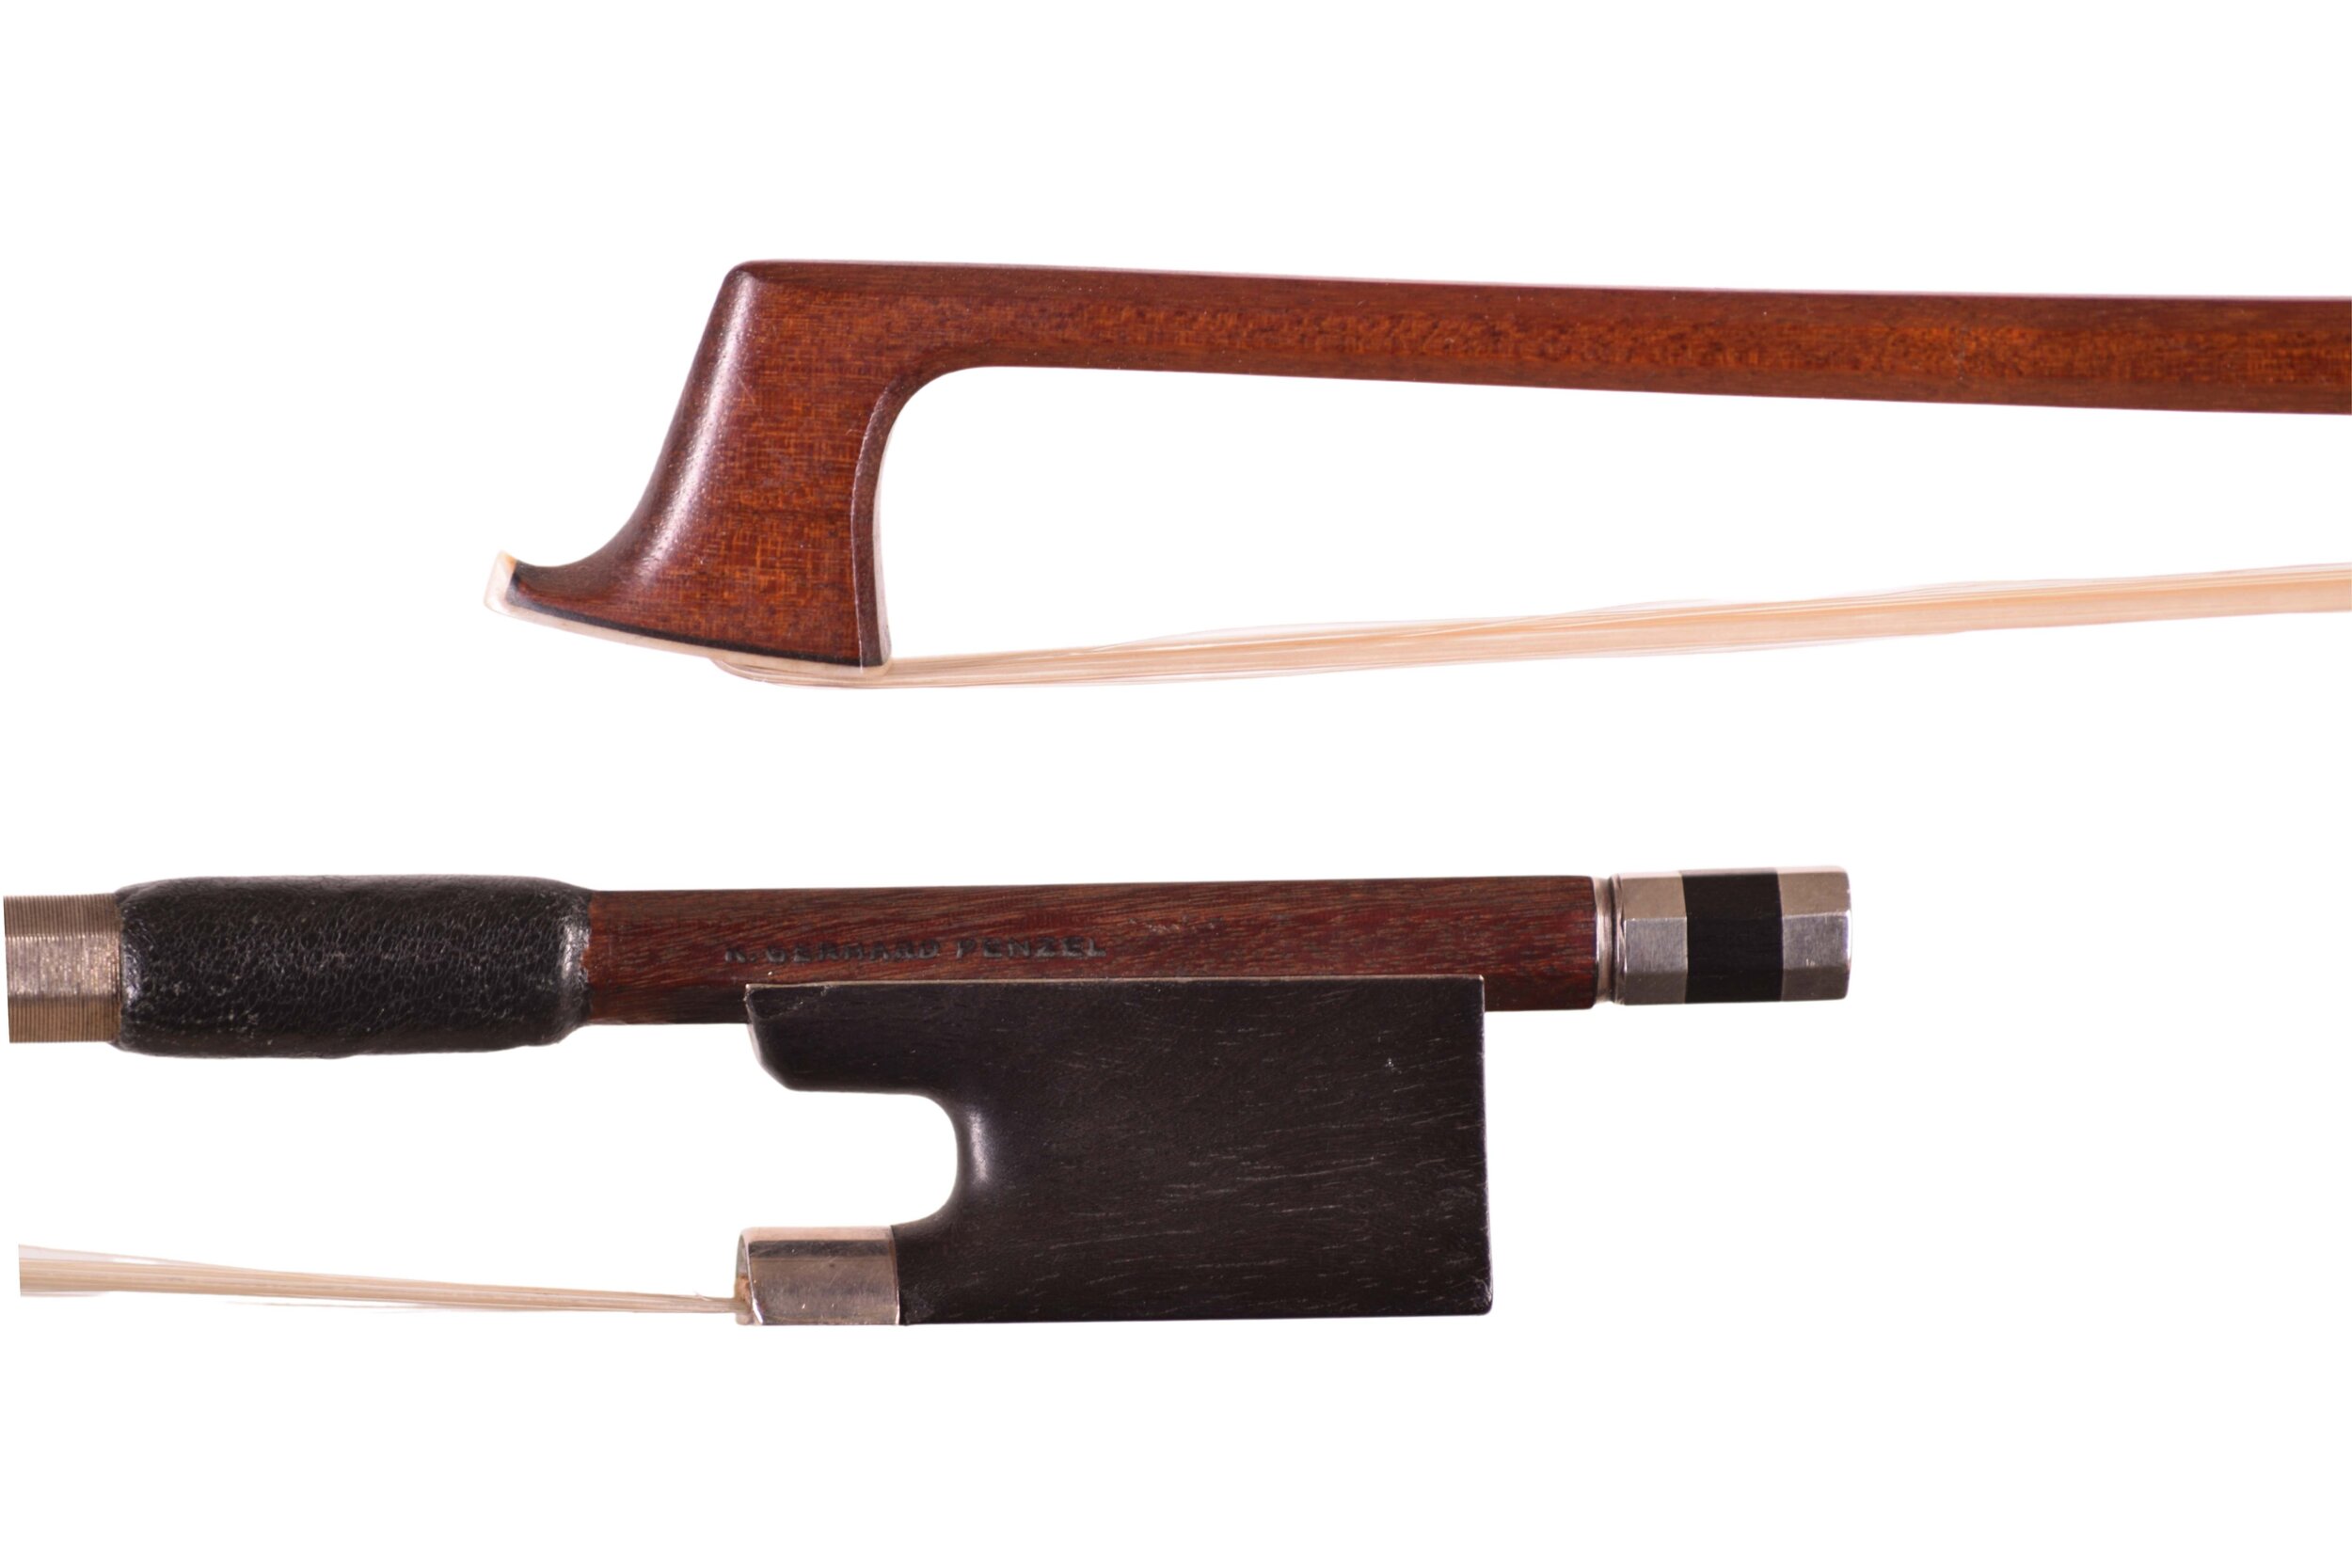 Penzel fine German violin bow for sale